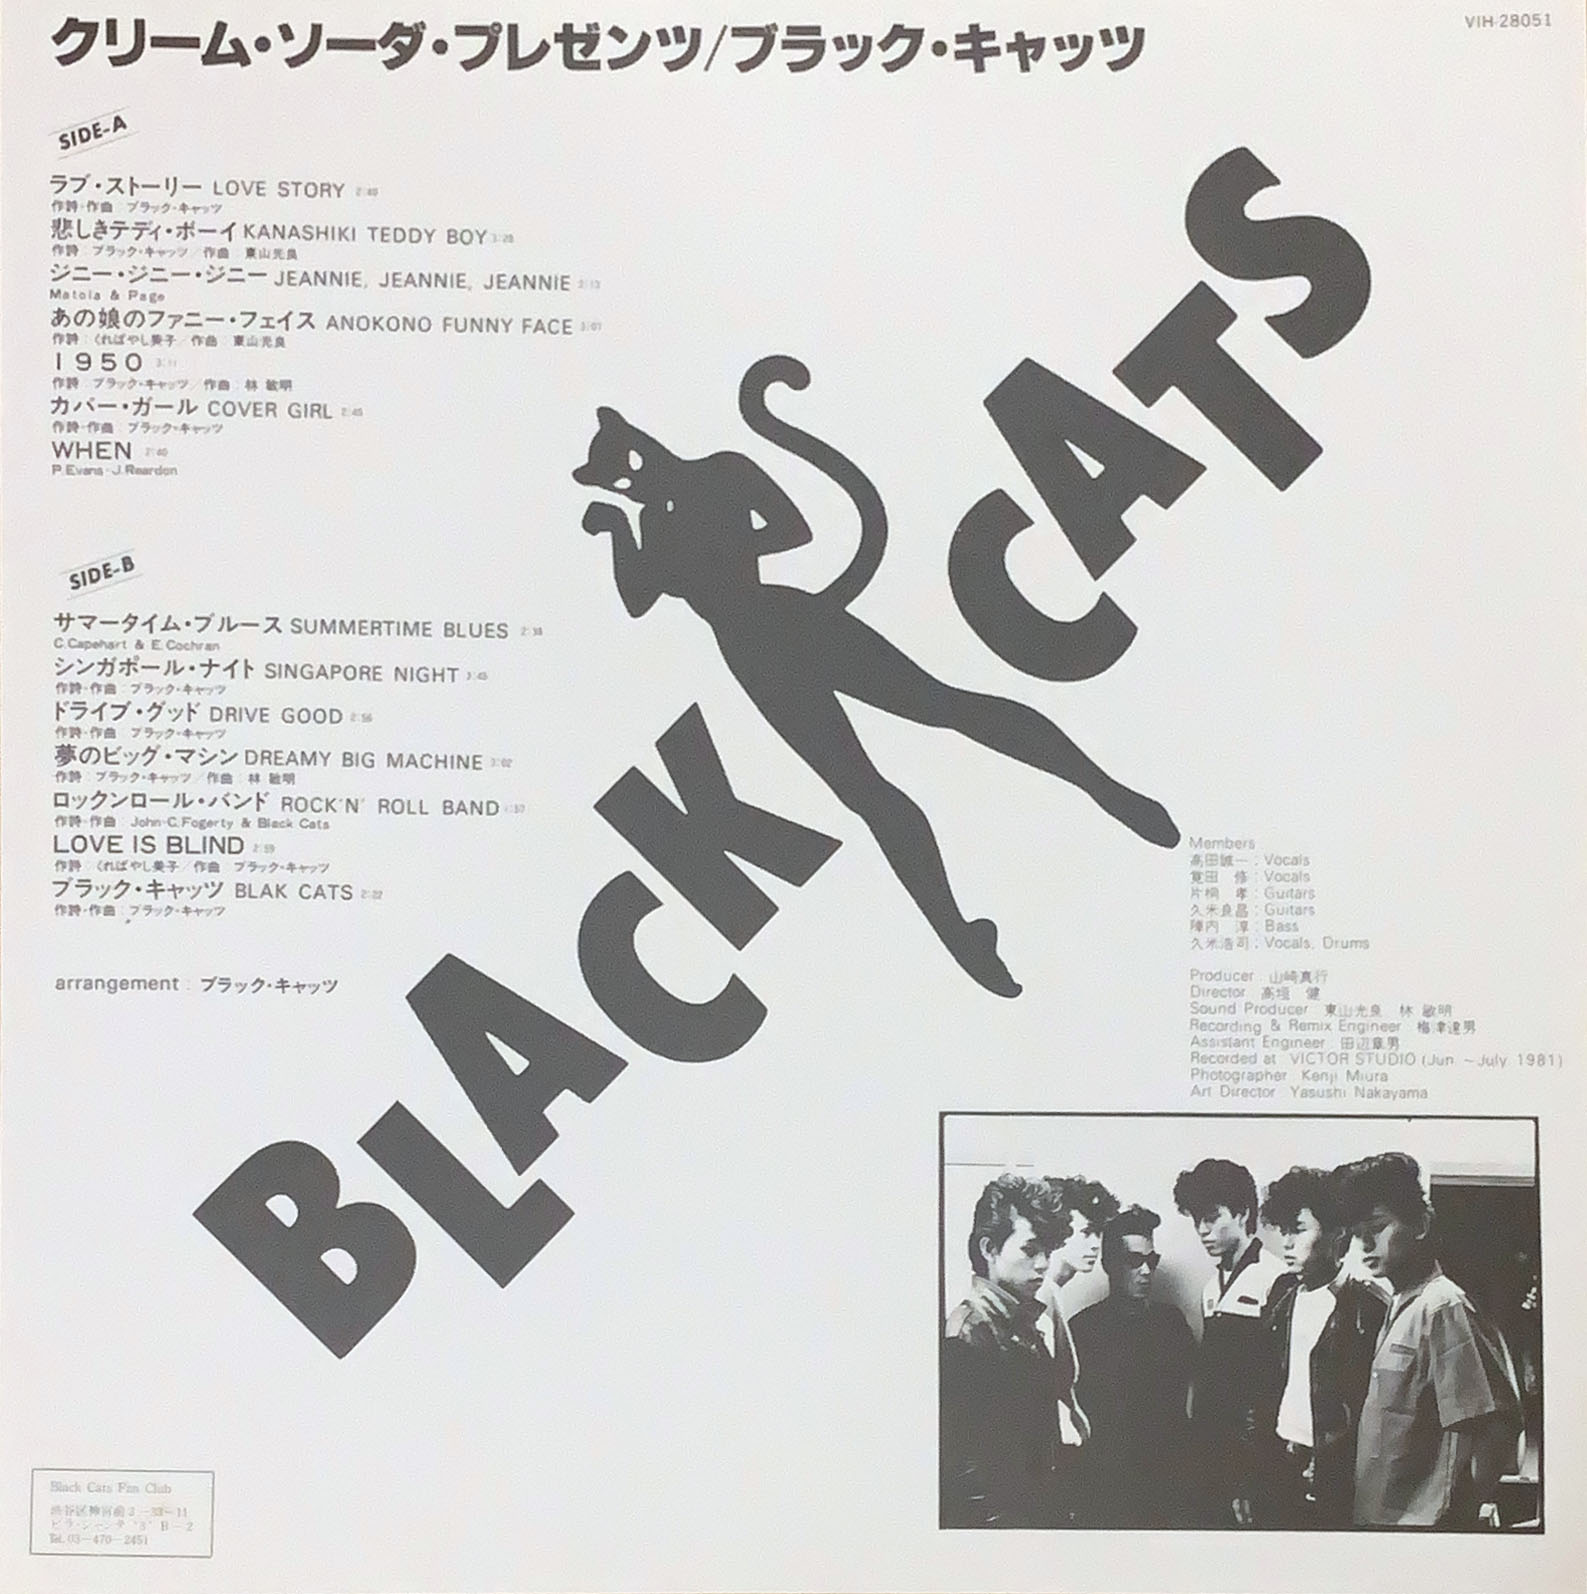 BLACK CATS バンドスコア クリームソーダ - その他